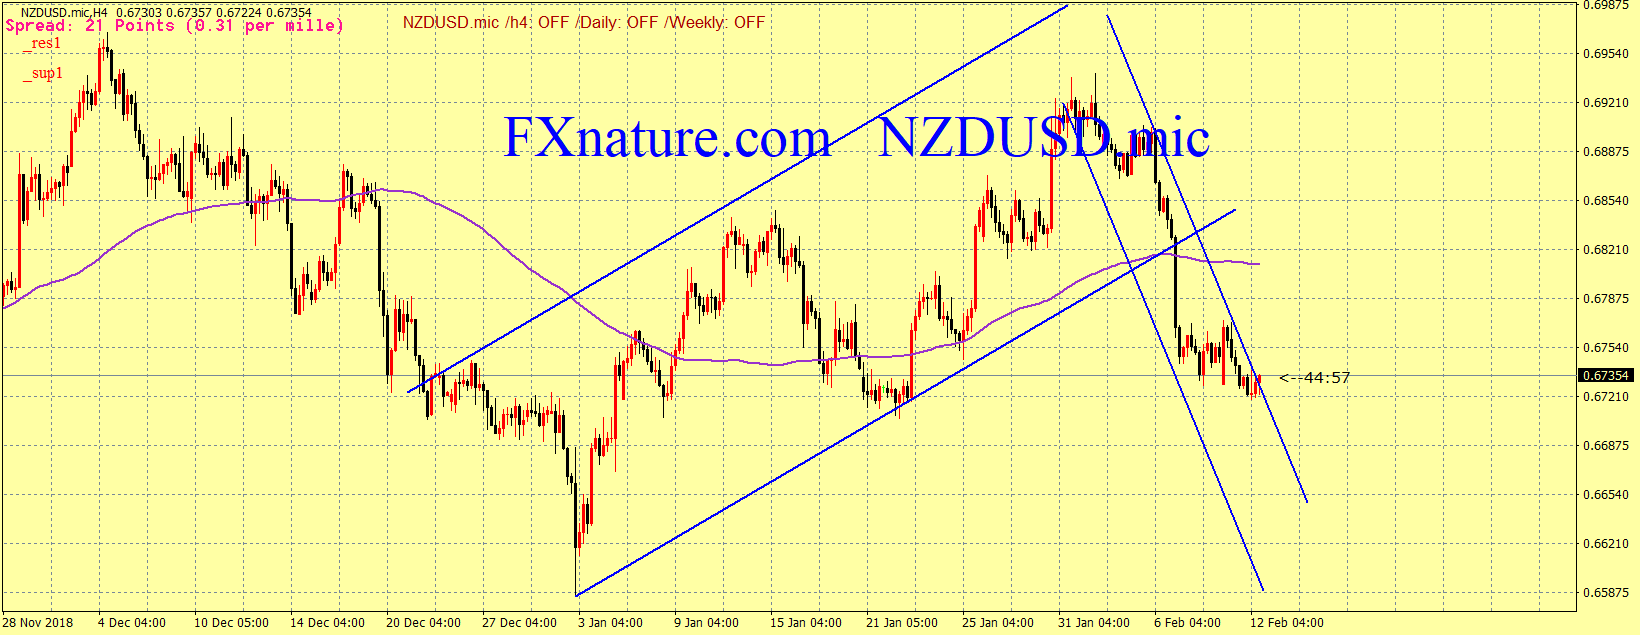 تحلیل تکنیکال دلار نیوزلند به دلار آمریکا (NZDUSD )